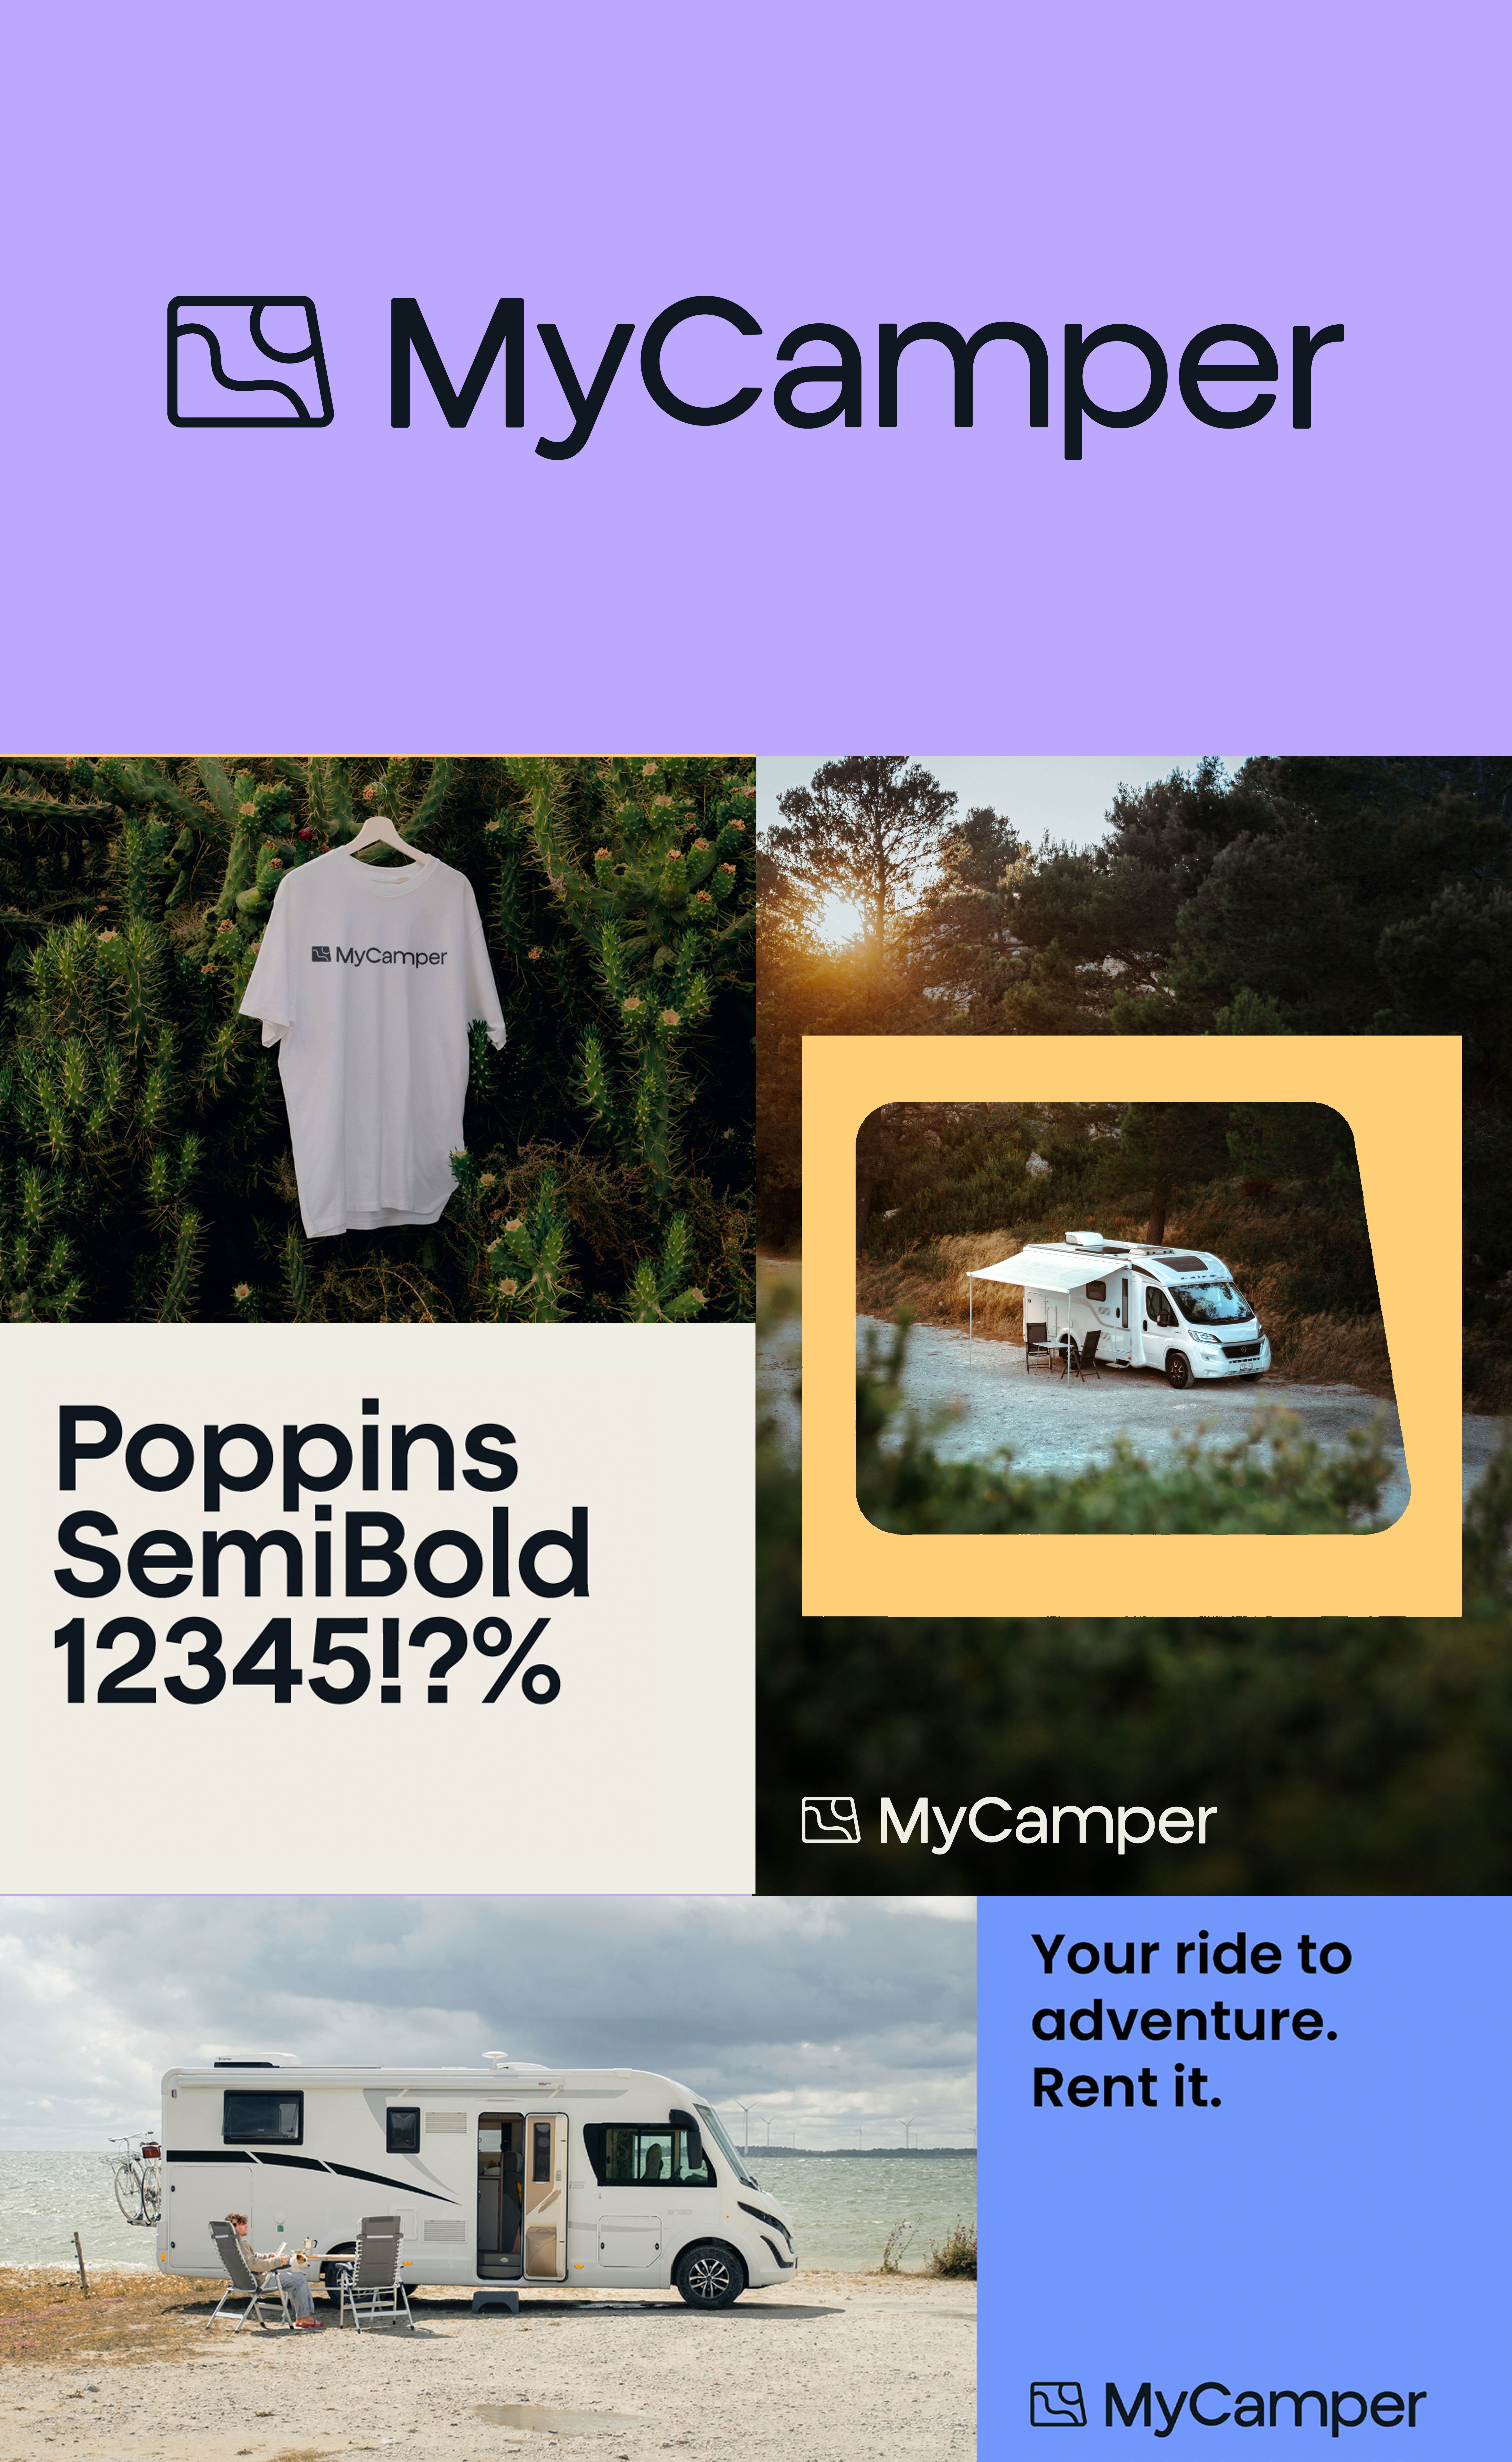 Die neue Markenwelt von MyCamper ist warmherzig, nahbar und seriös.